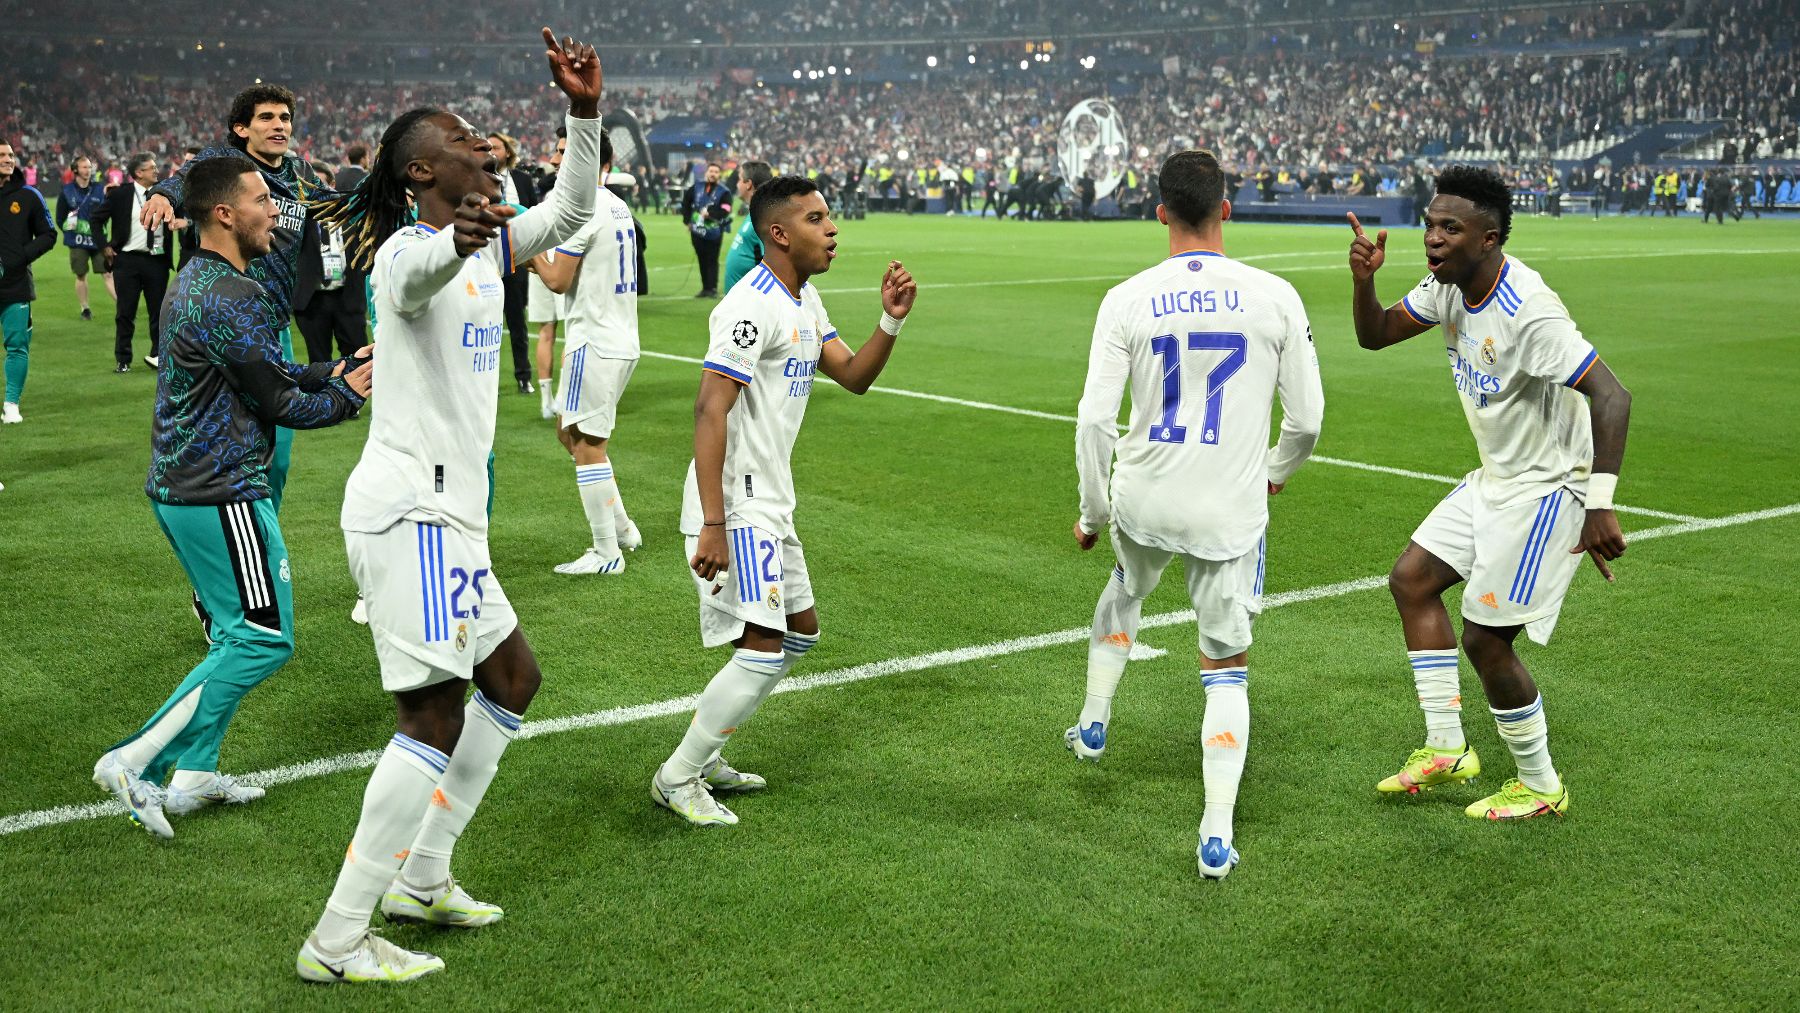 El Real Madrid, campeón de Europa tras ganar la Champions League